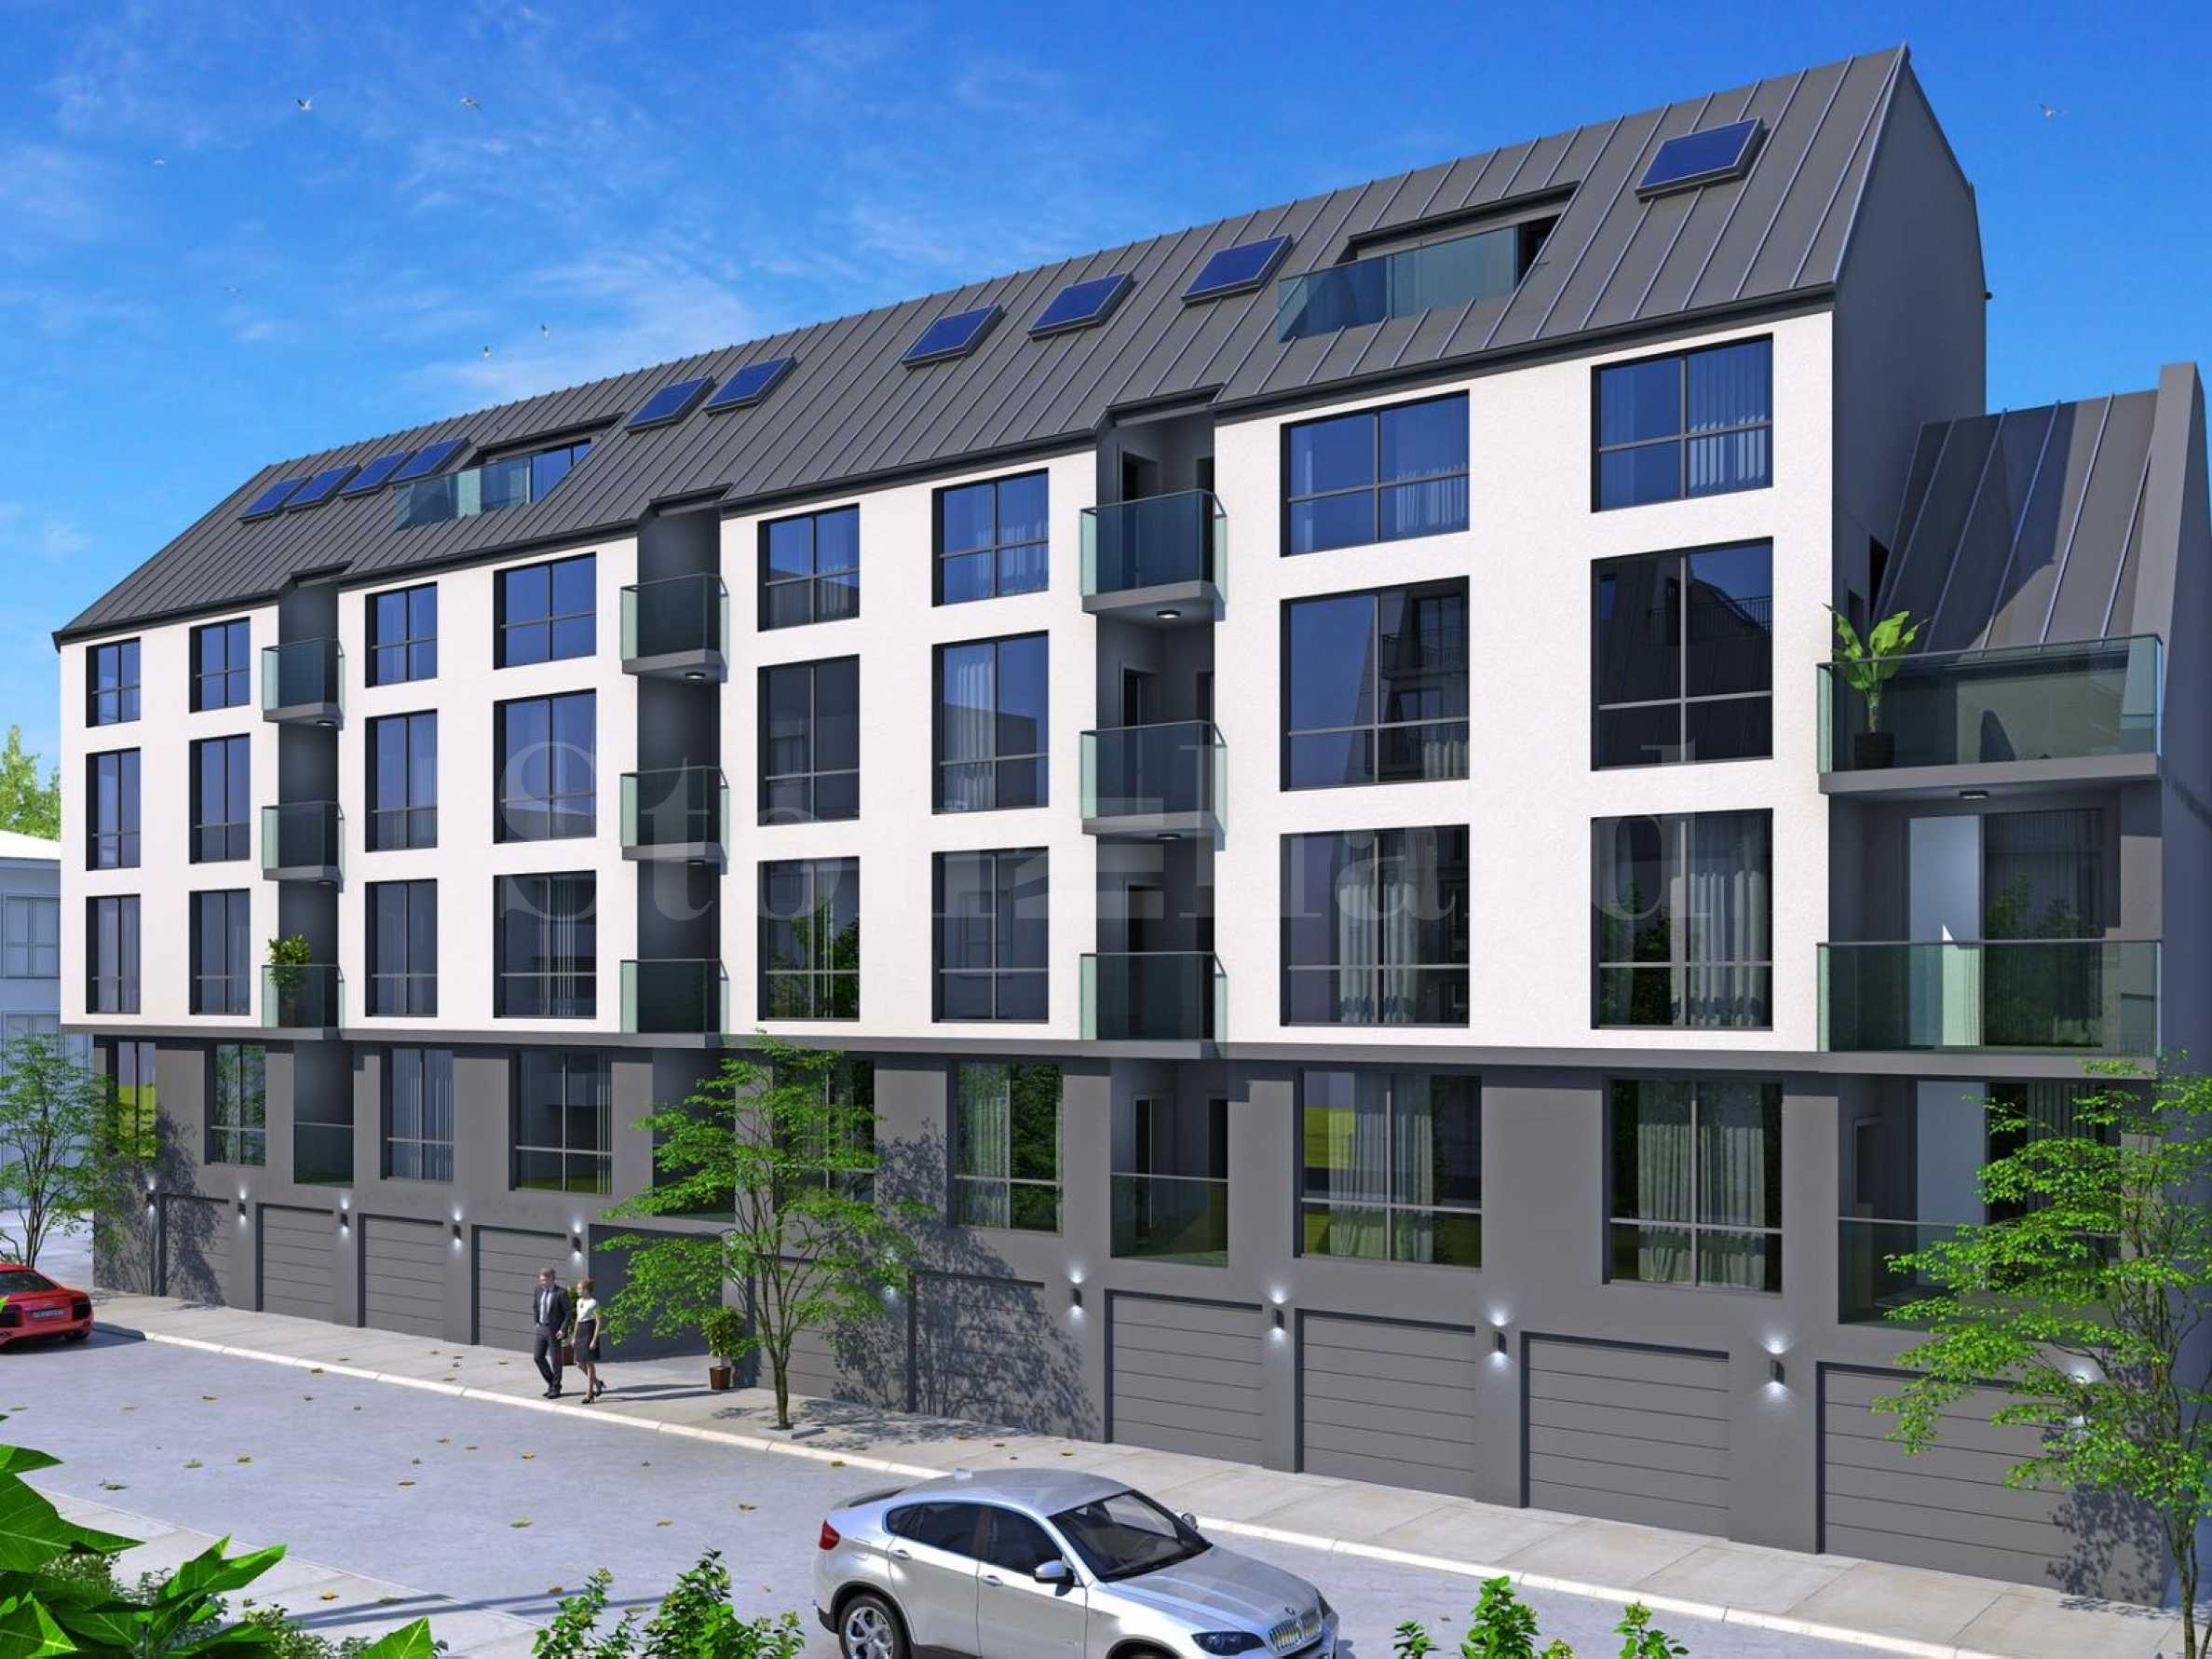 Апартаменти ново строителство в района на Колхозен пазар2 - Stonehard